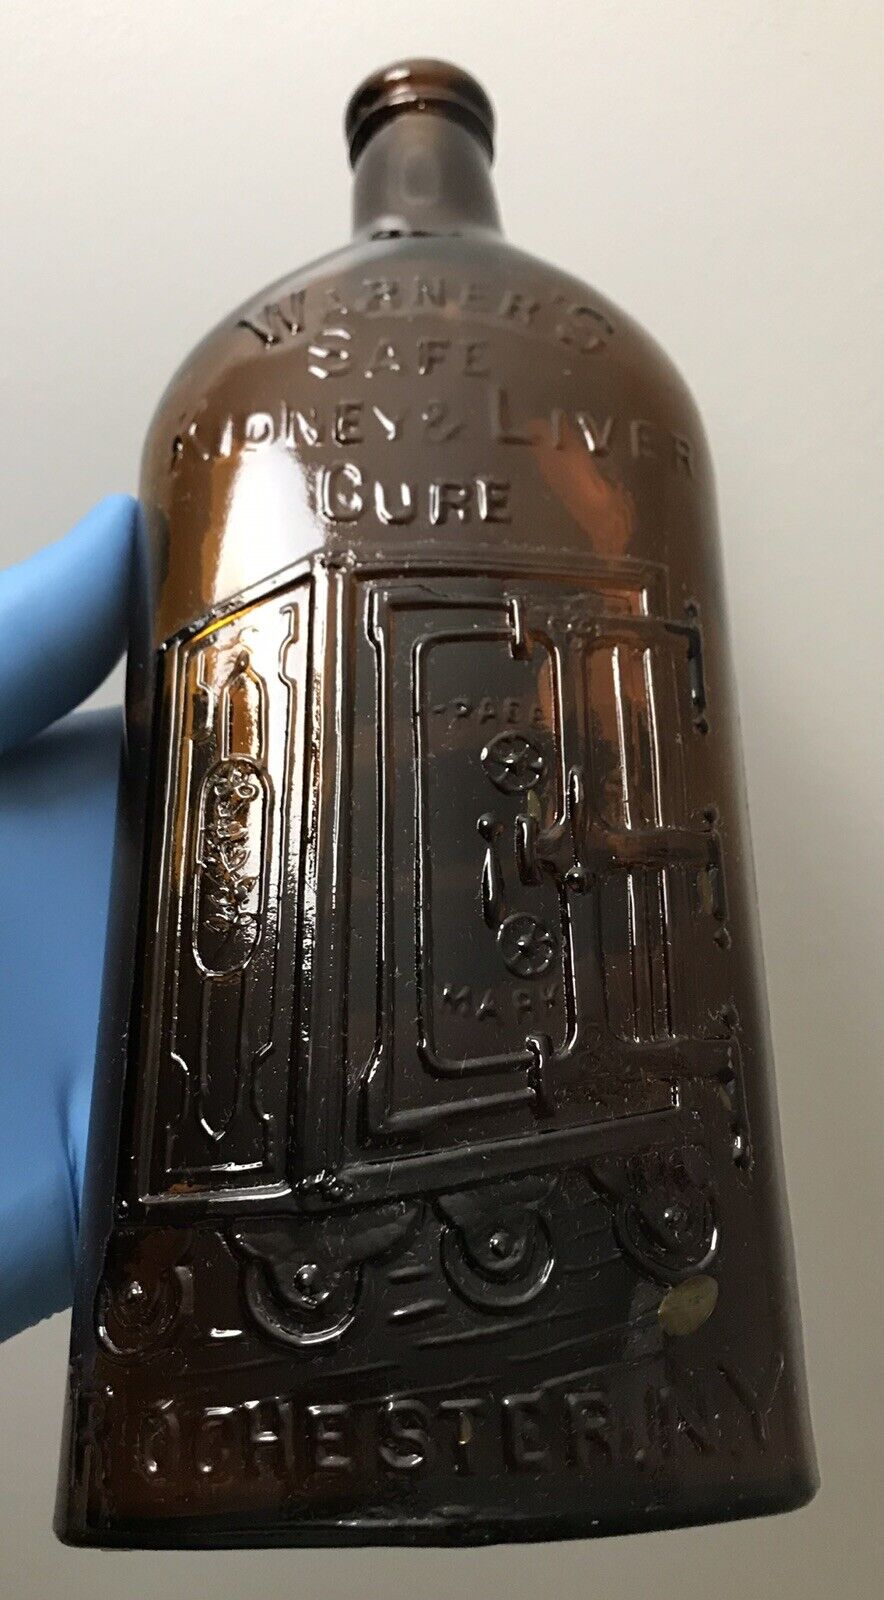 Antique Warner's Safe Kidney & Liver Cure Bottle c. 1890 PRIVY DUG